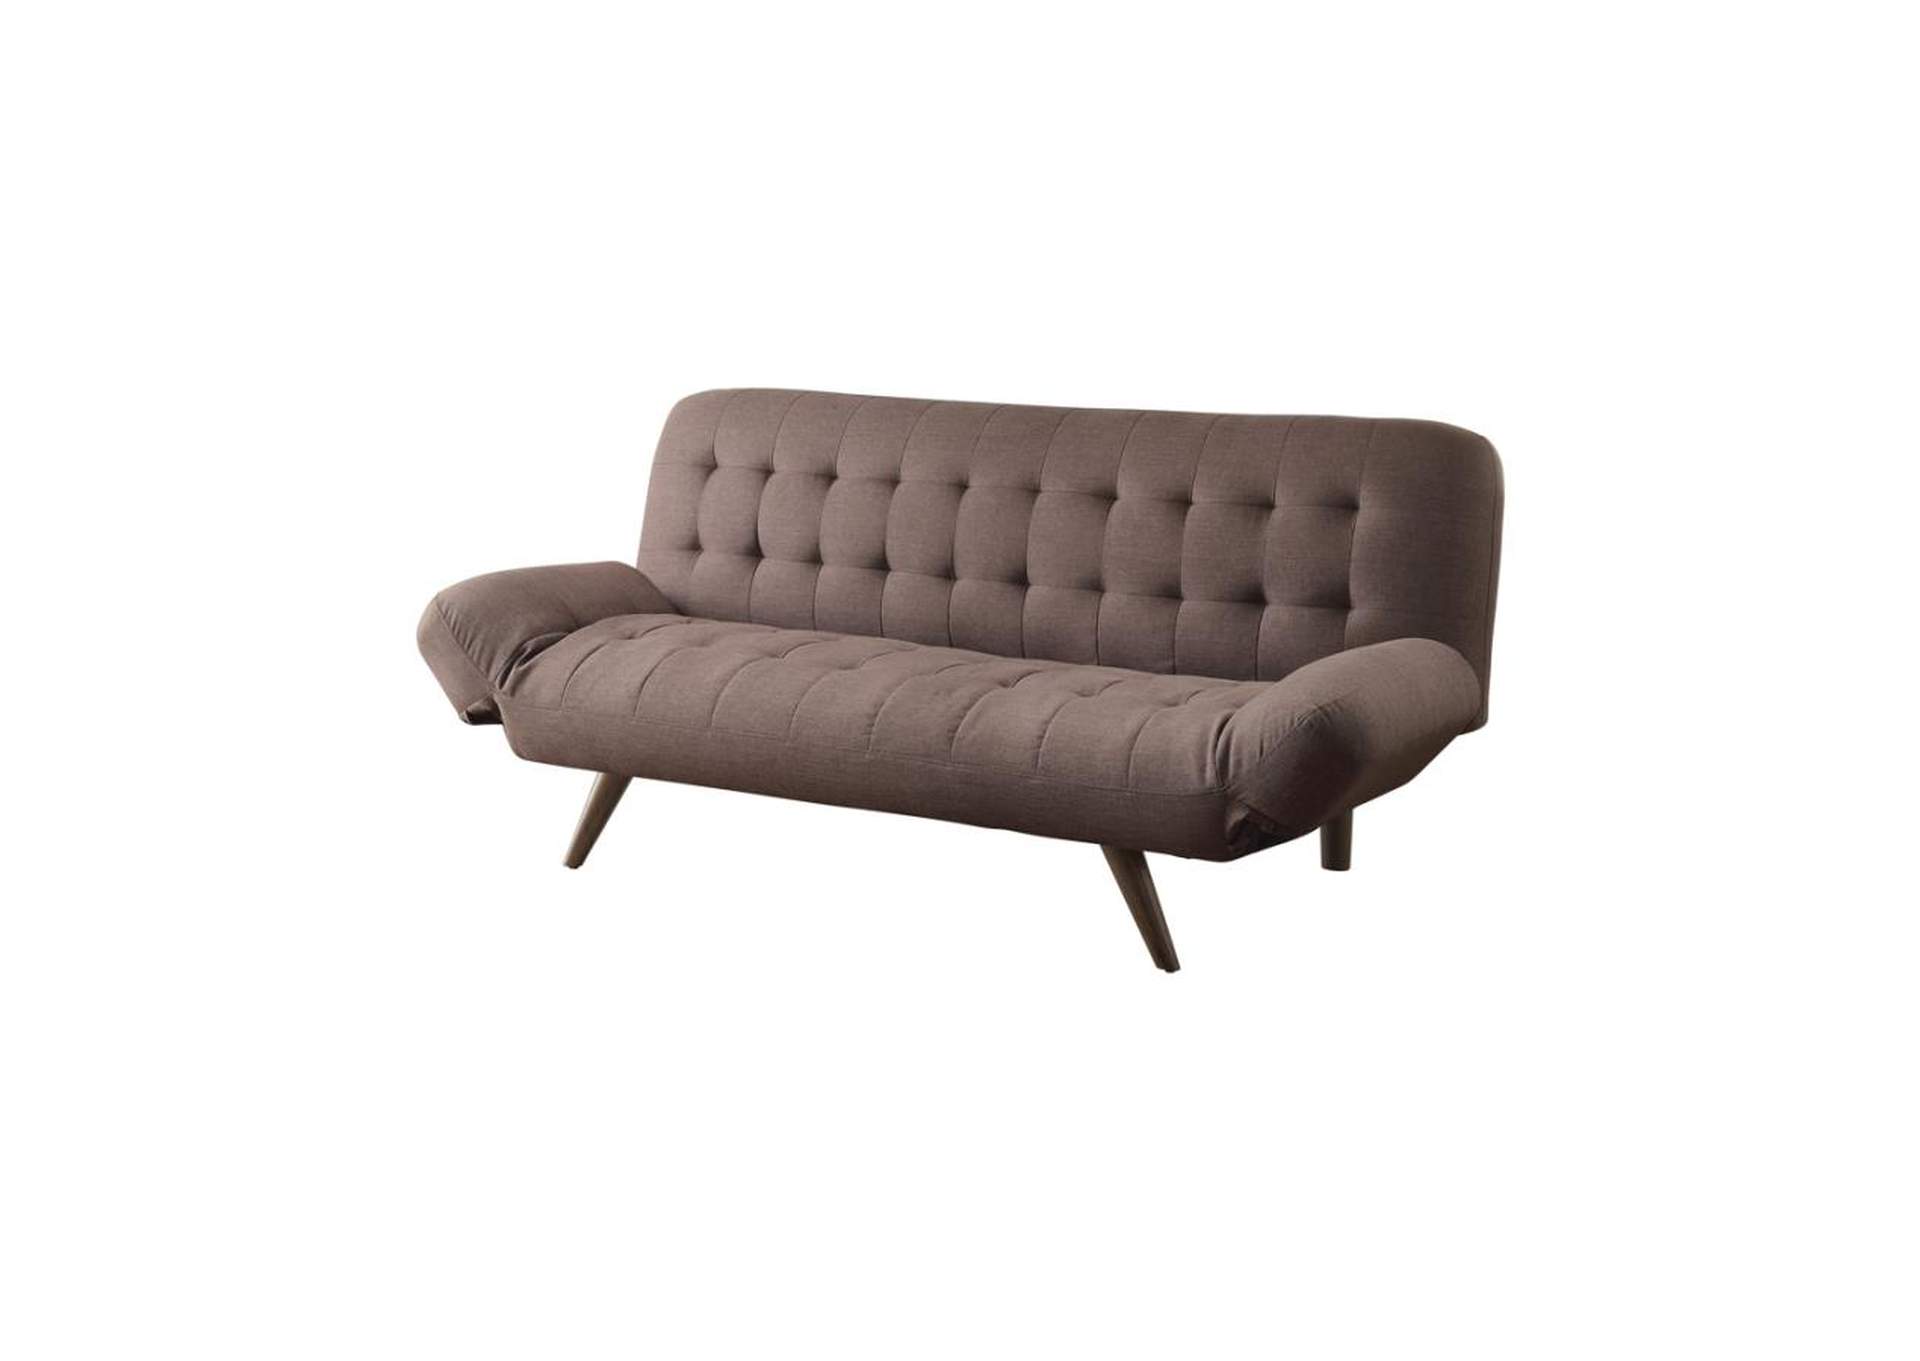 Janet Tufted Sofa Bed with Adjustable Armrest Milk Grey,Coaster Furniture